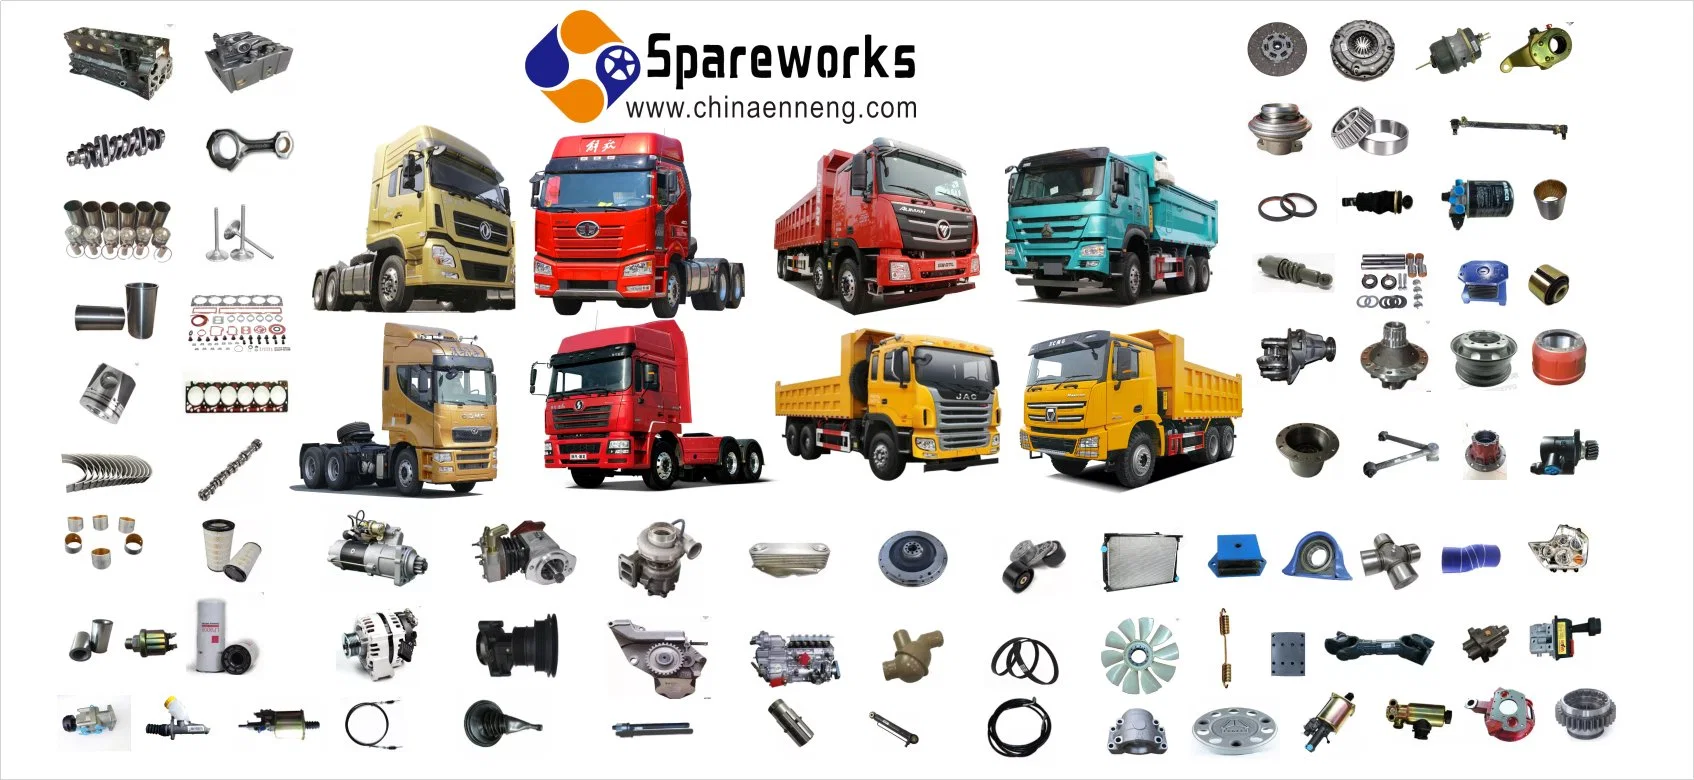 Peças de chassis para camiões Shacman junta universal 26013314080 Sparesworks